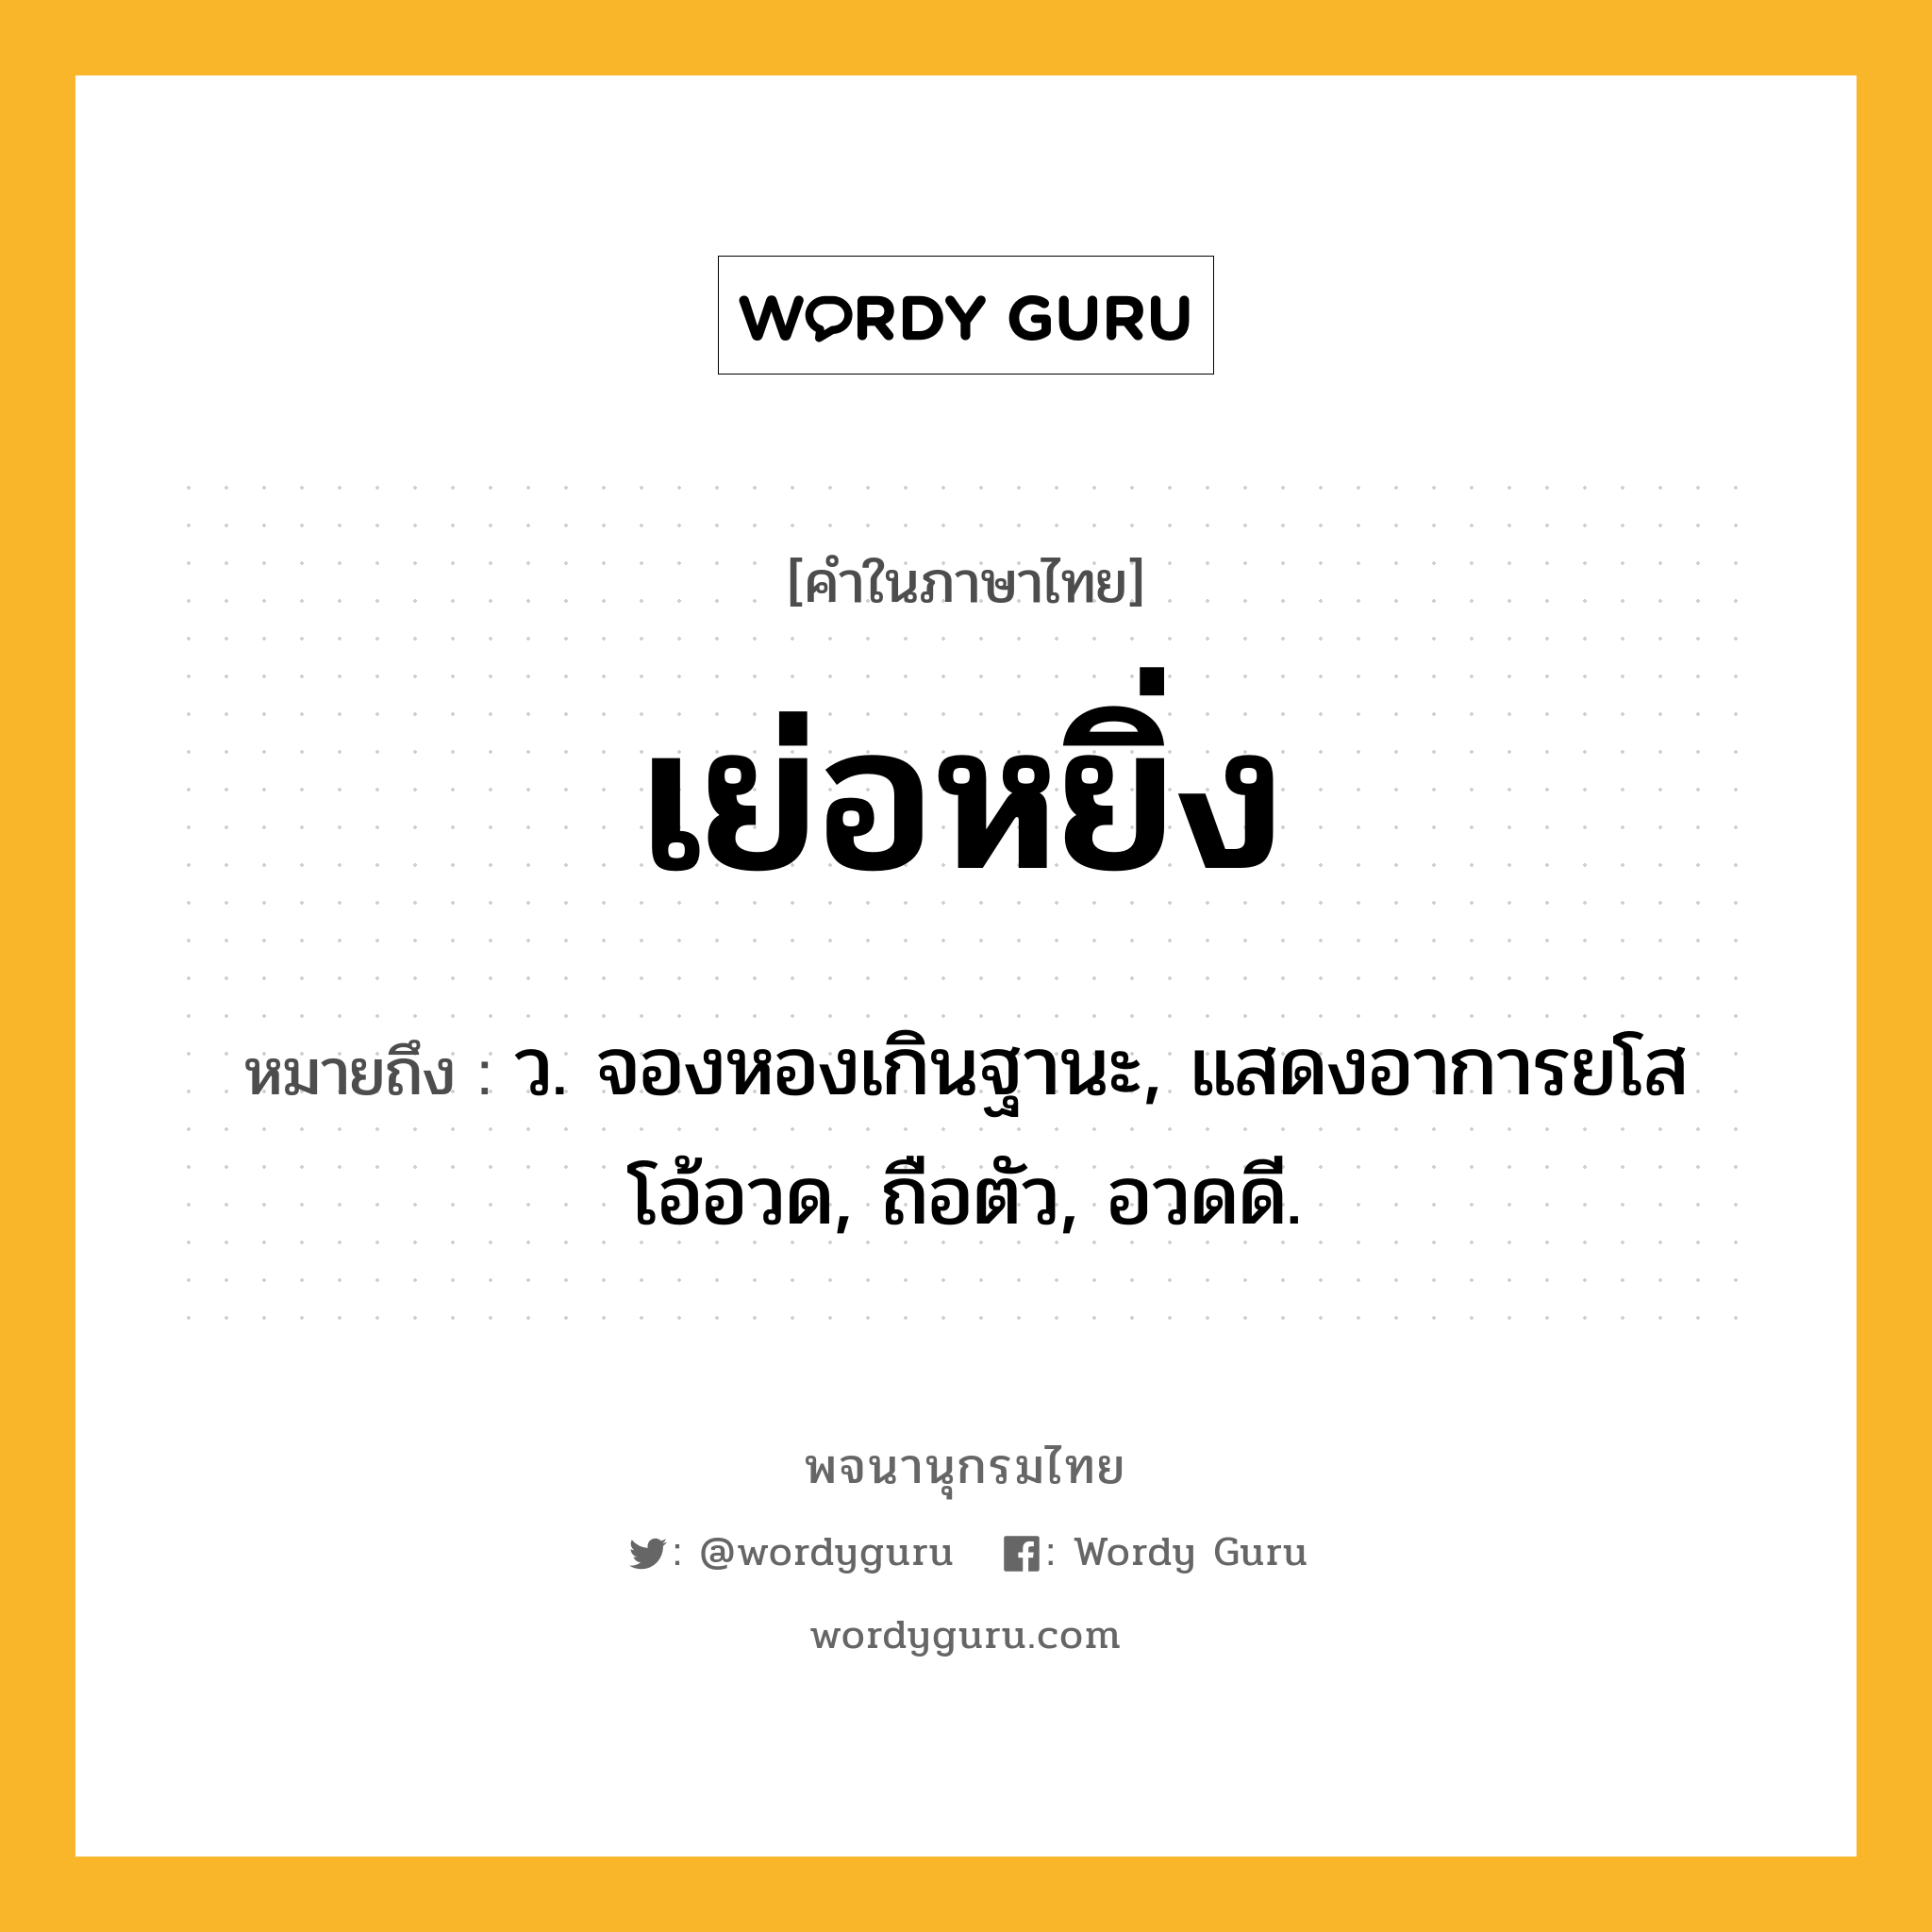 เย่อหยิ่ง ความหมาย หมายถึงอะไร?, คำในภาษาไทย เย่อหยิ่ง หมายถึง ว. จองหองเกินฐานะ, แสดงอาการยโสโอ้อวด, ถือตัว, อวดดี.